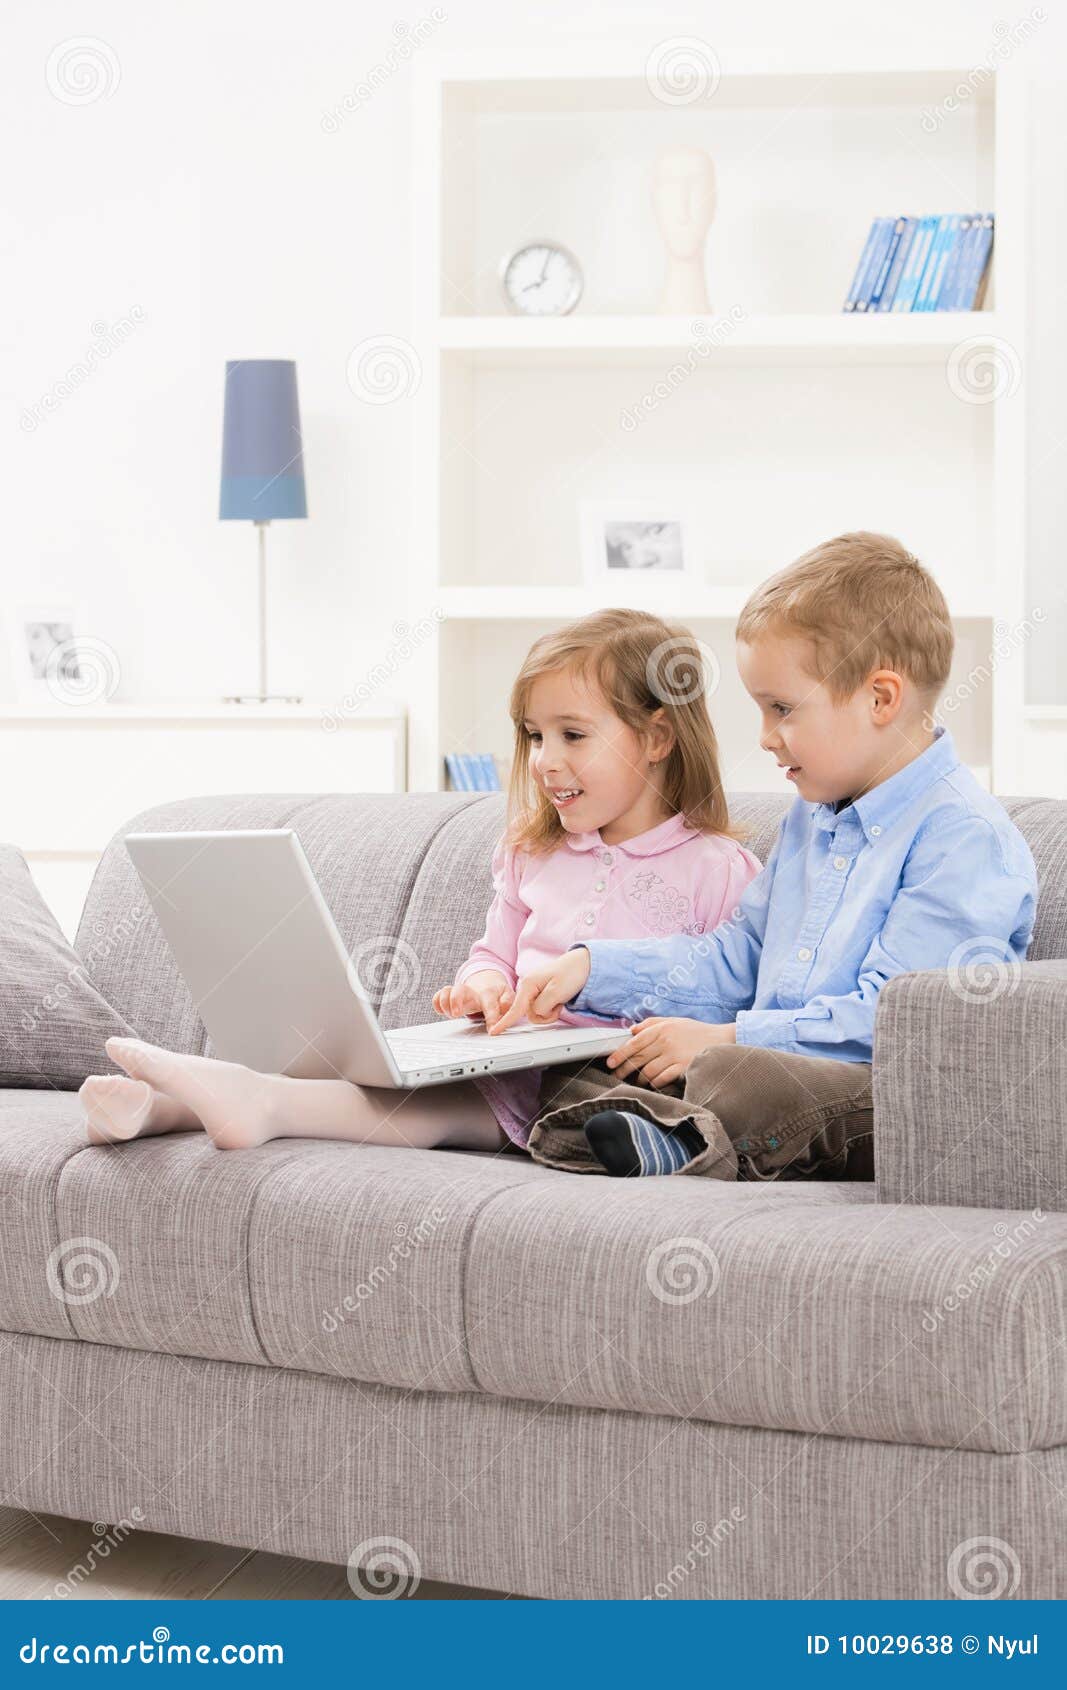 children browsing internet